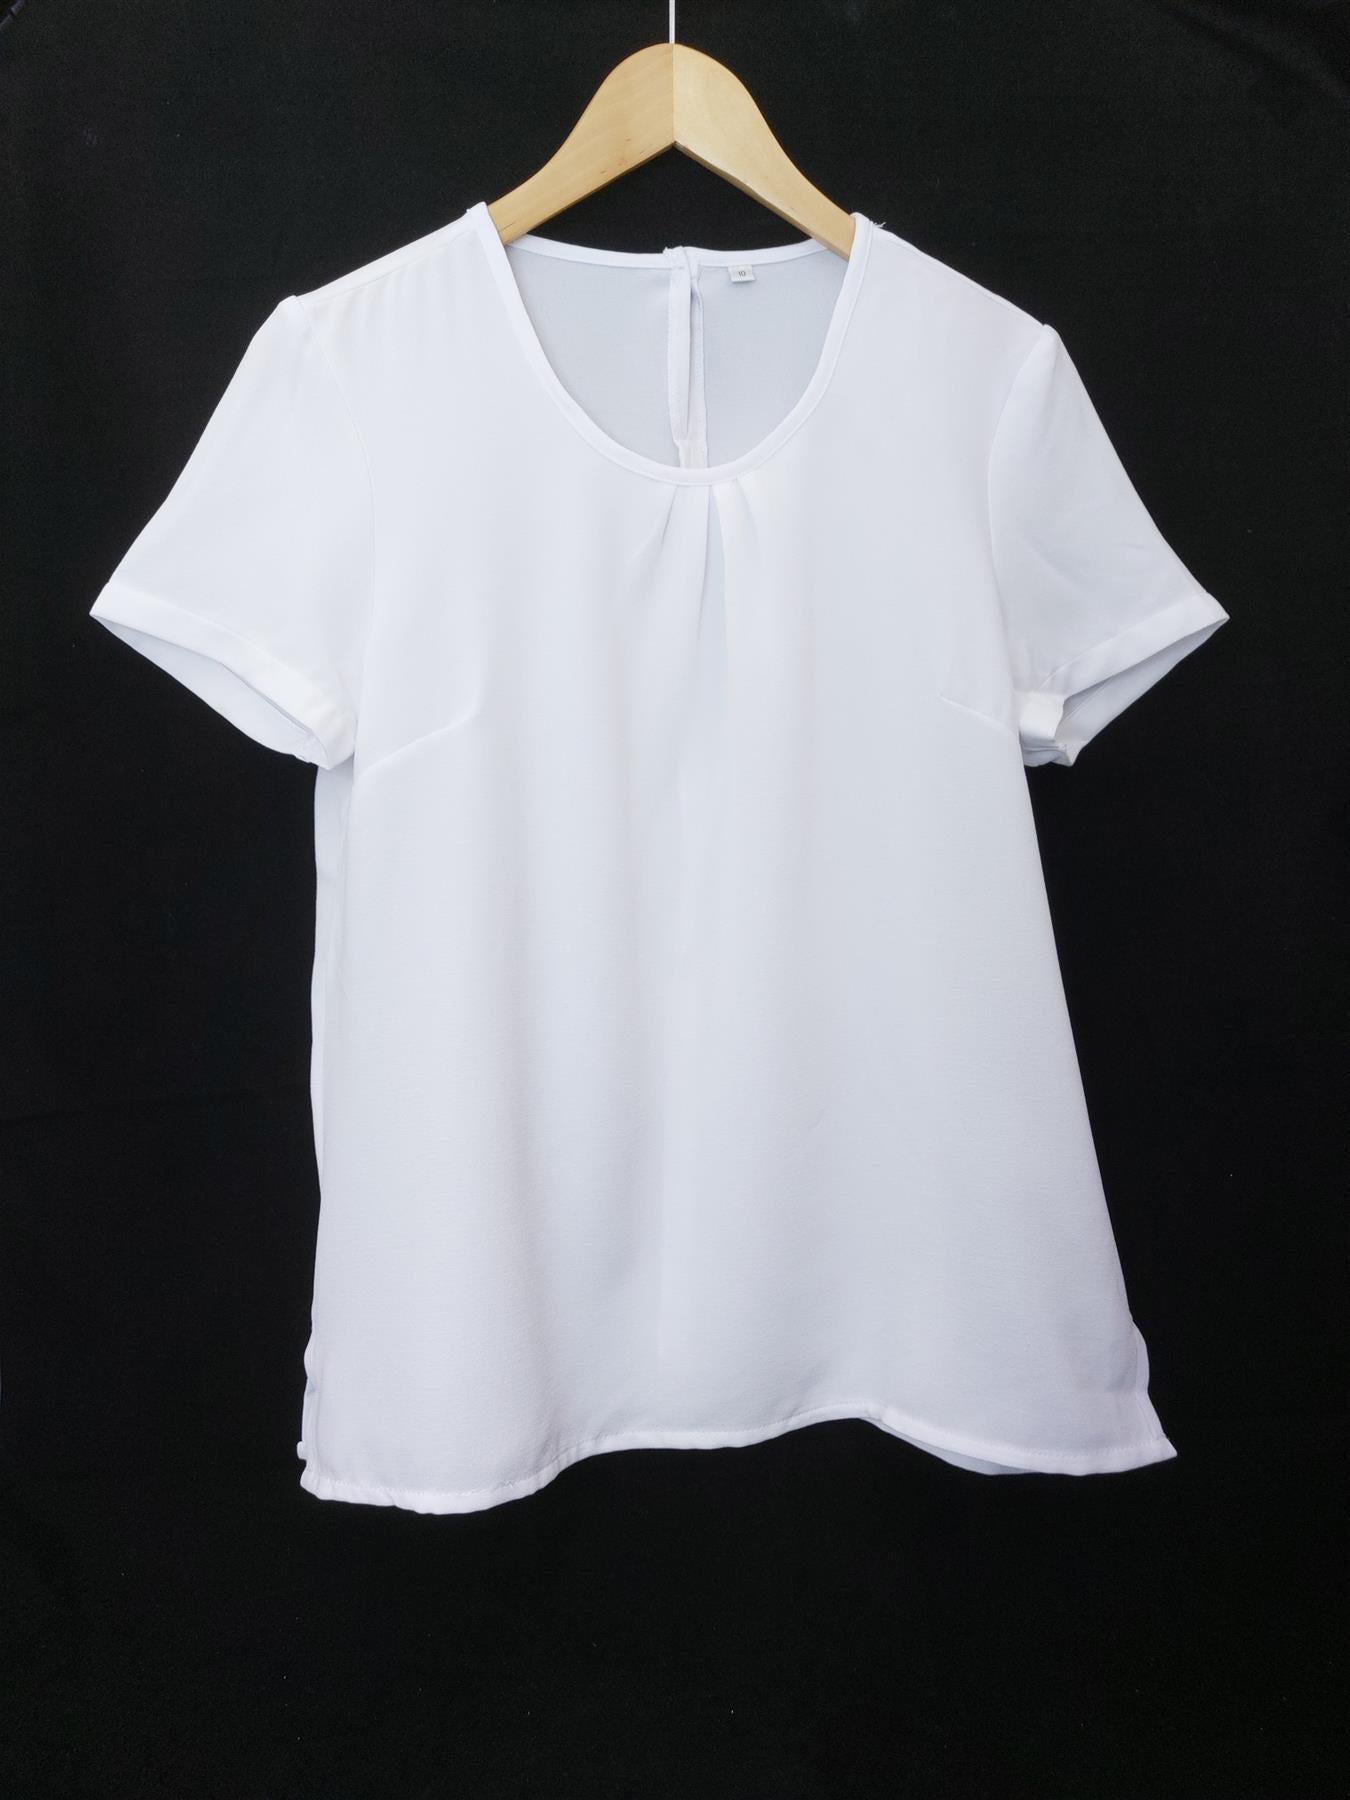 Women's Work Blouse 2-Pack Short Sleeve Smart Easy Care Office Shirt Top White